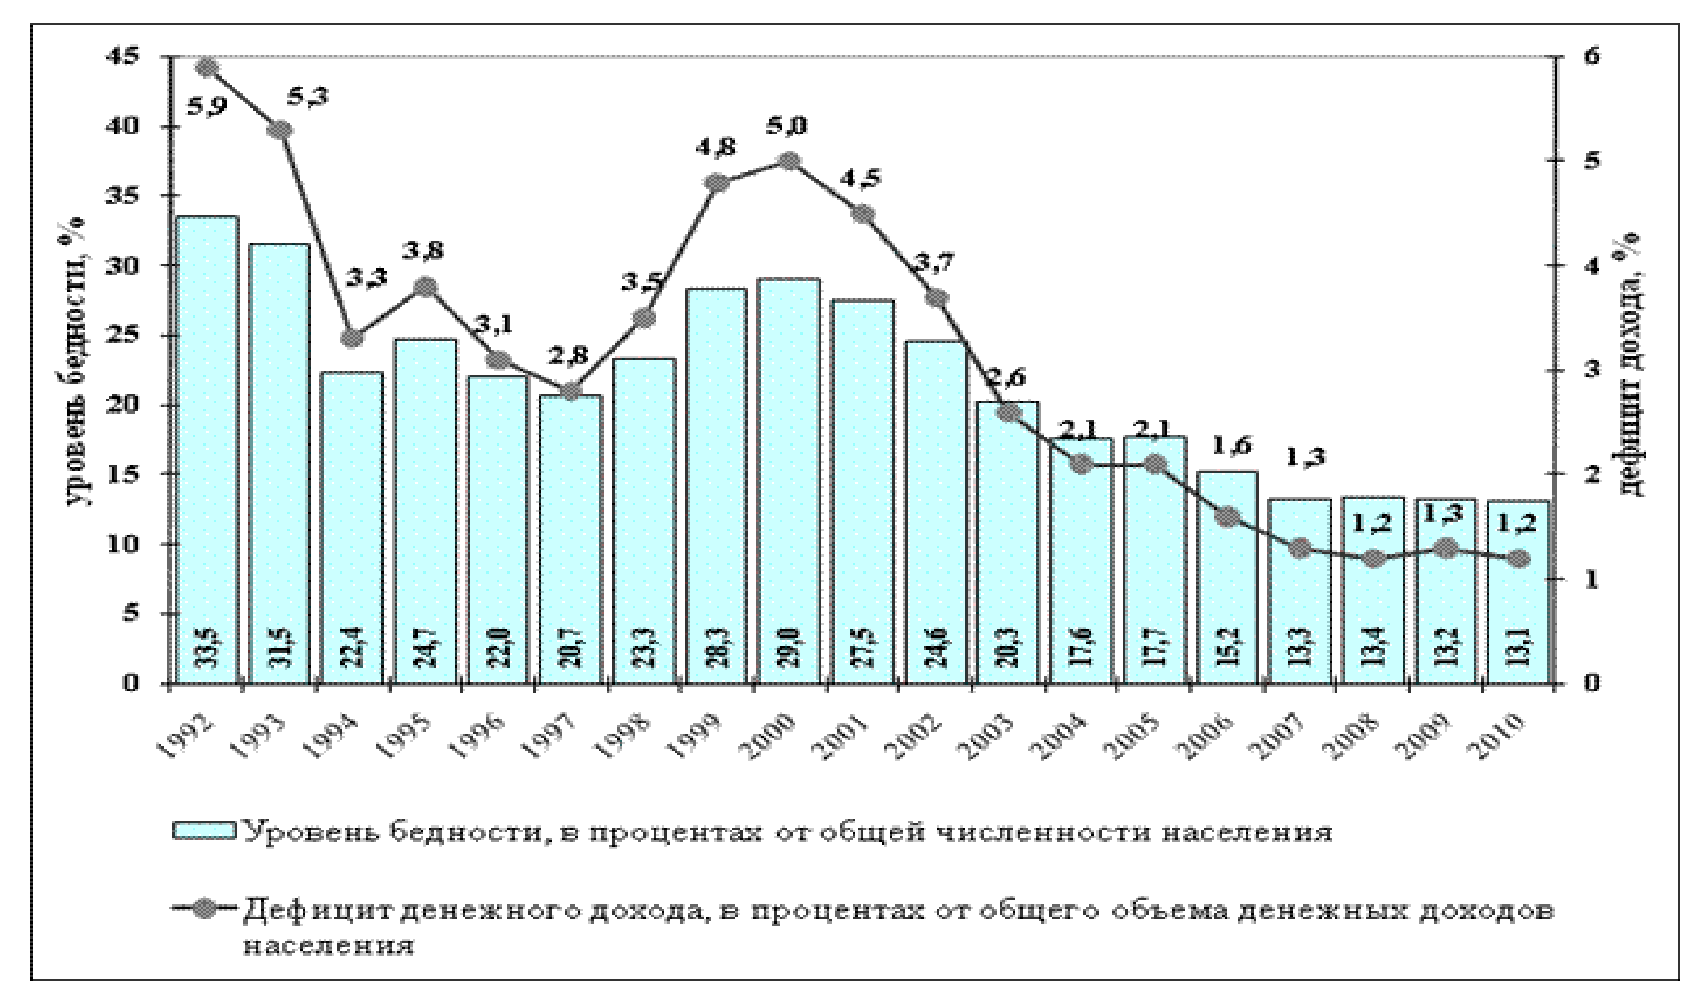 Курсовая работа по теме Статистика уровня безработицы в России